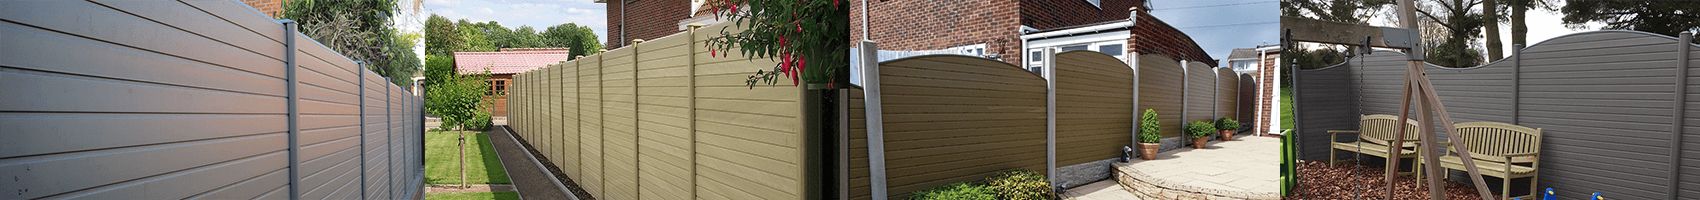 110mm x 90mm PVC Composite Fence Post Graphite 1.8m